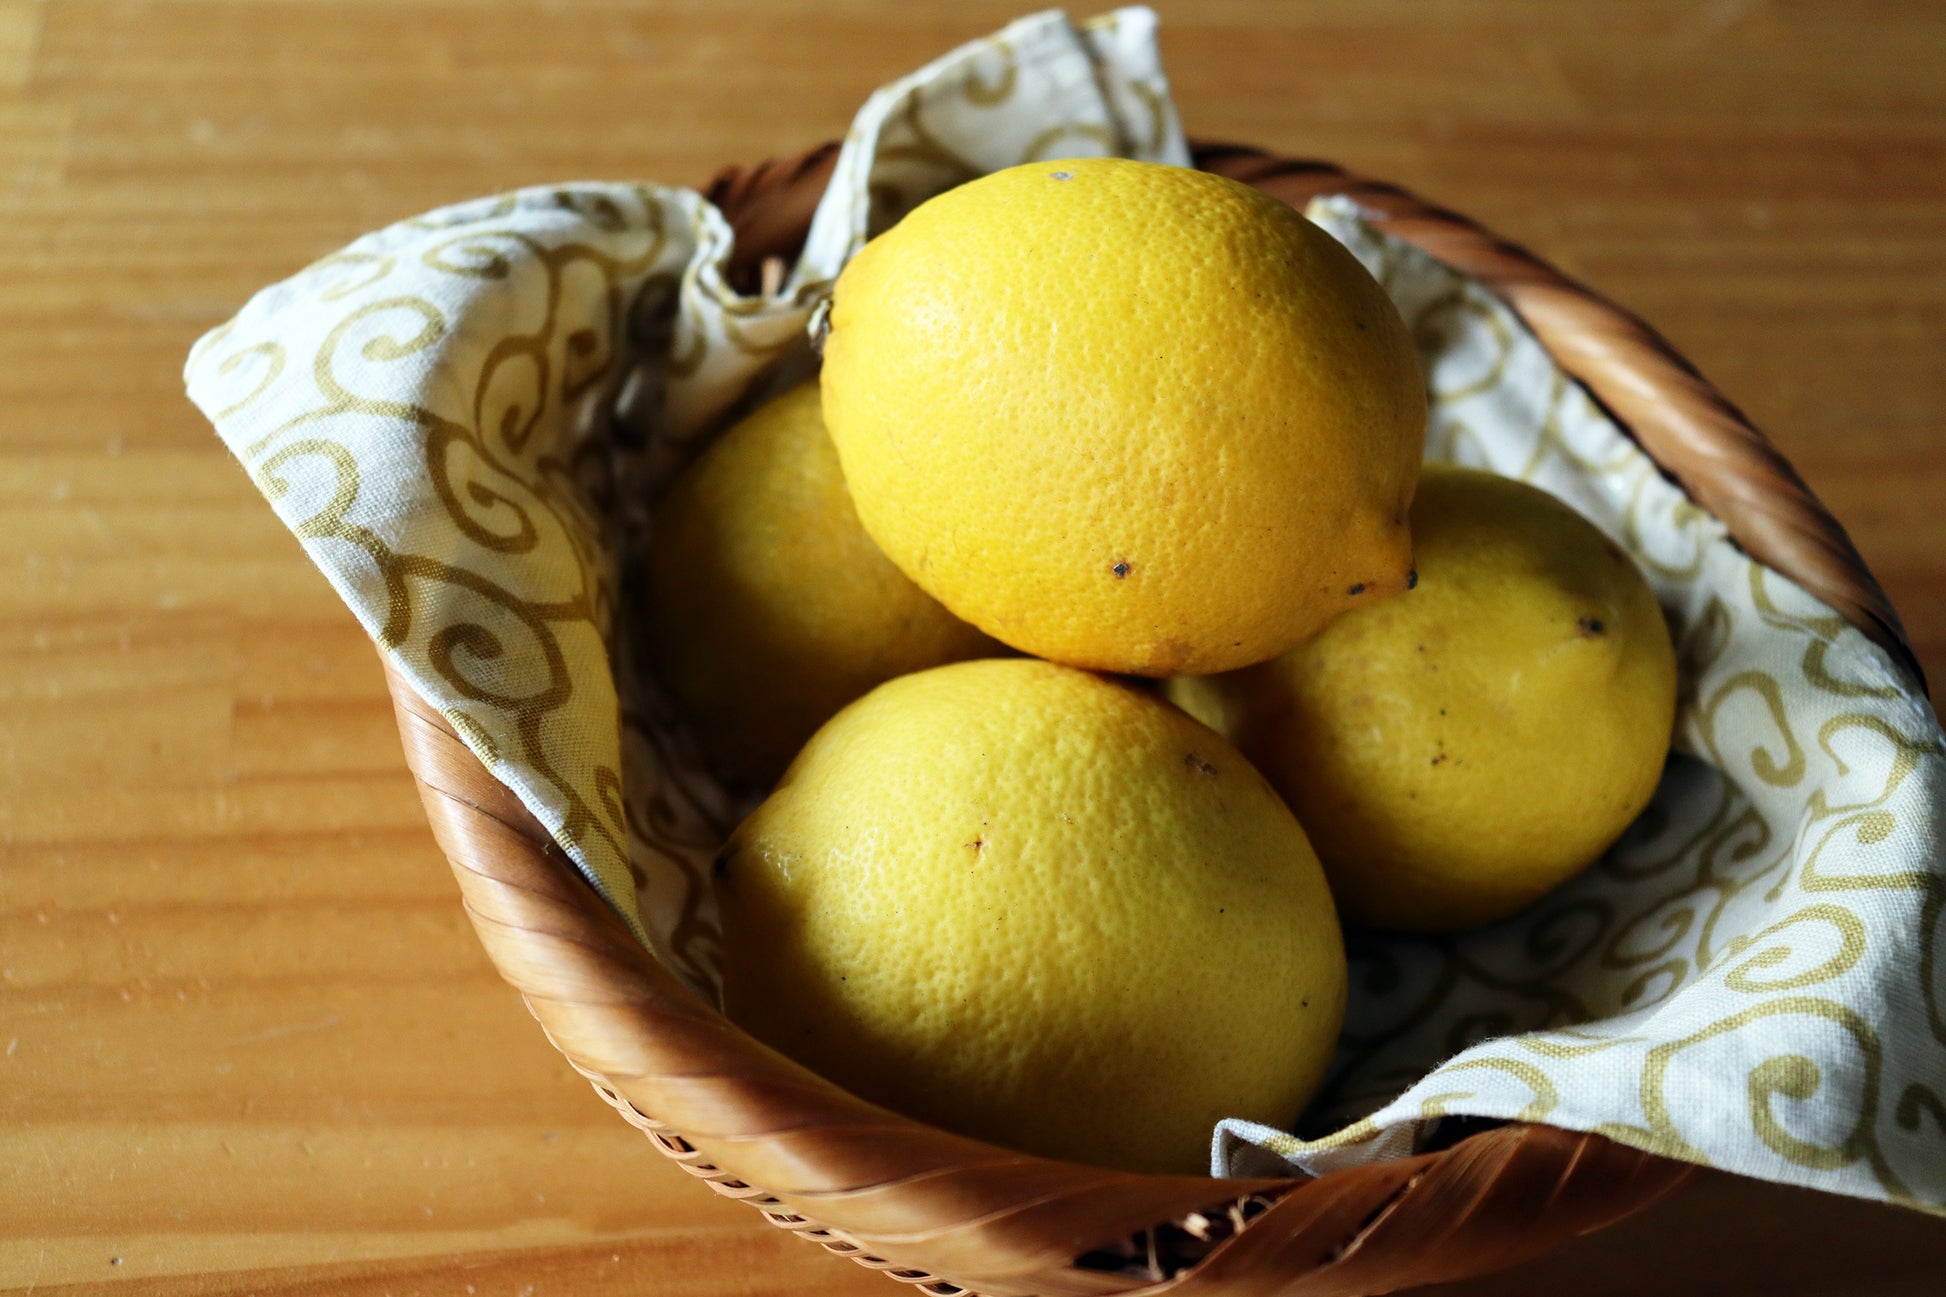 いつものリンゴに 和歌山県産 レモンをプラス。 デザートにティータイムに ぜひどうぞ！ ドライフルーツ・乾燥野菜 BLUE BLUEBERRY FARM   